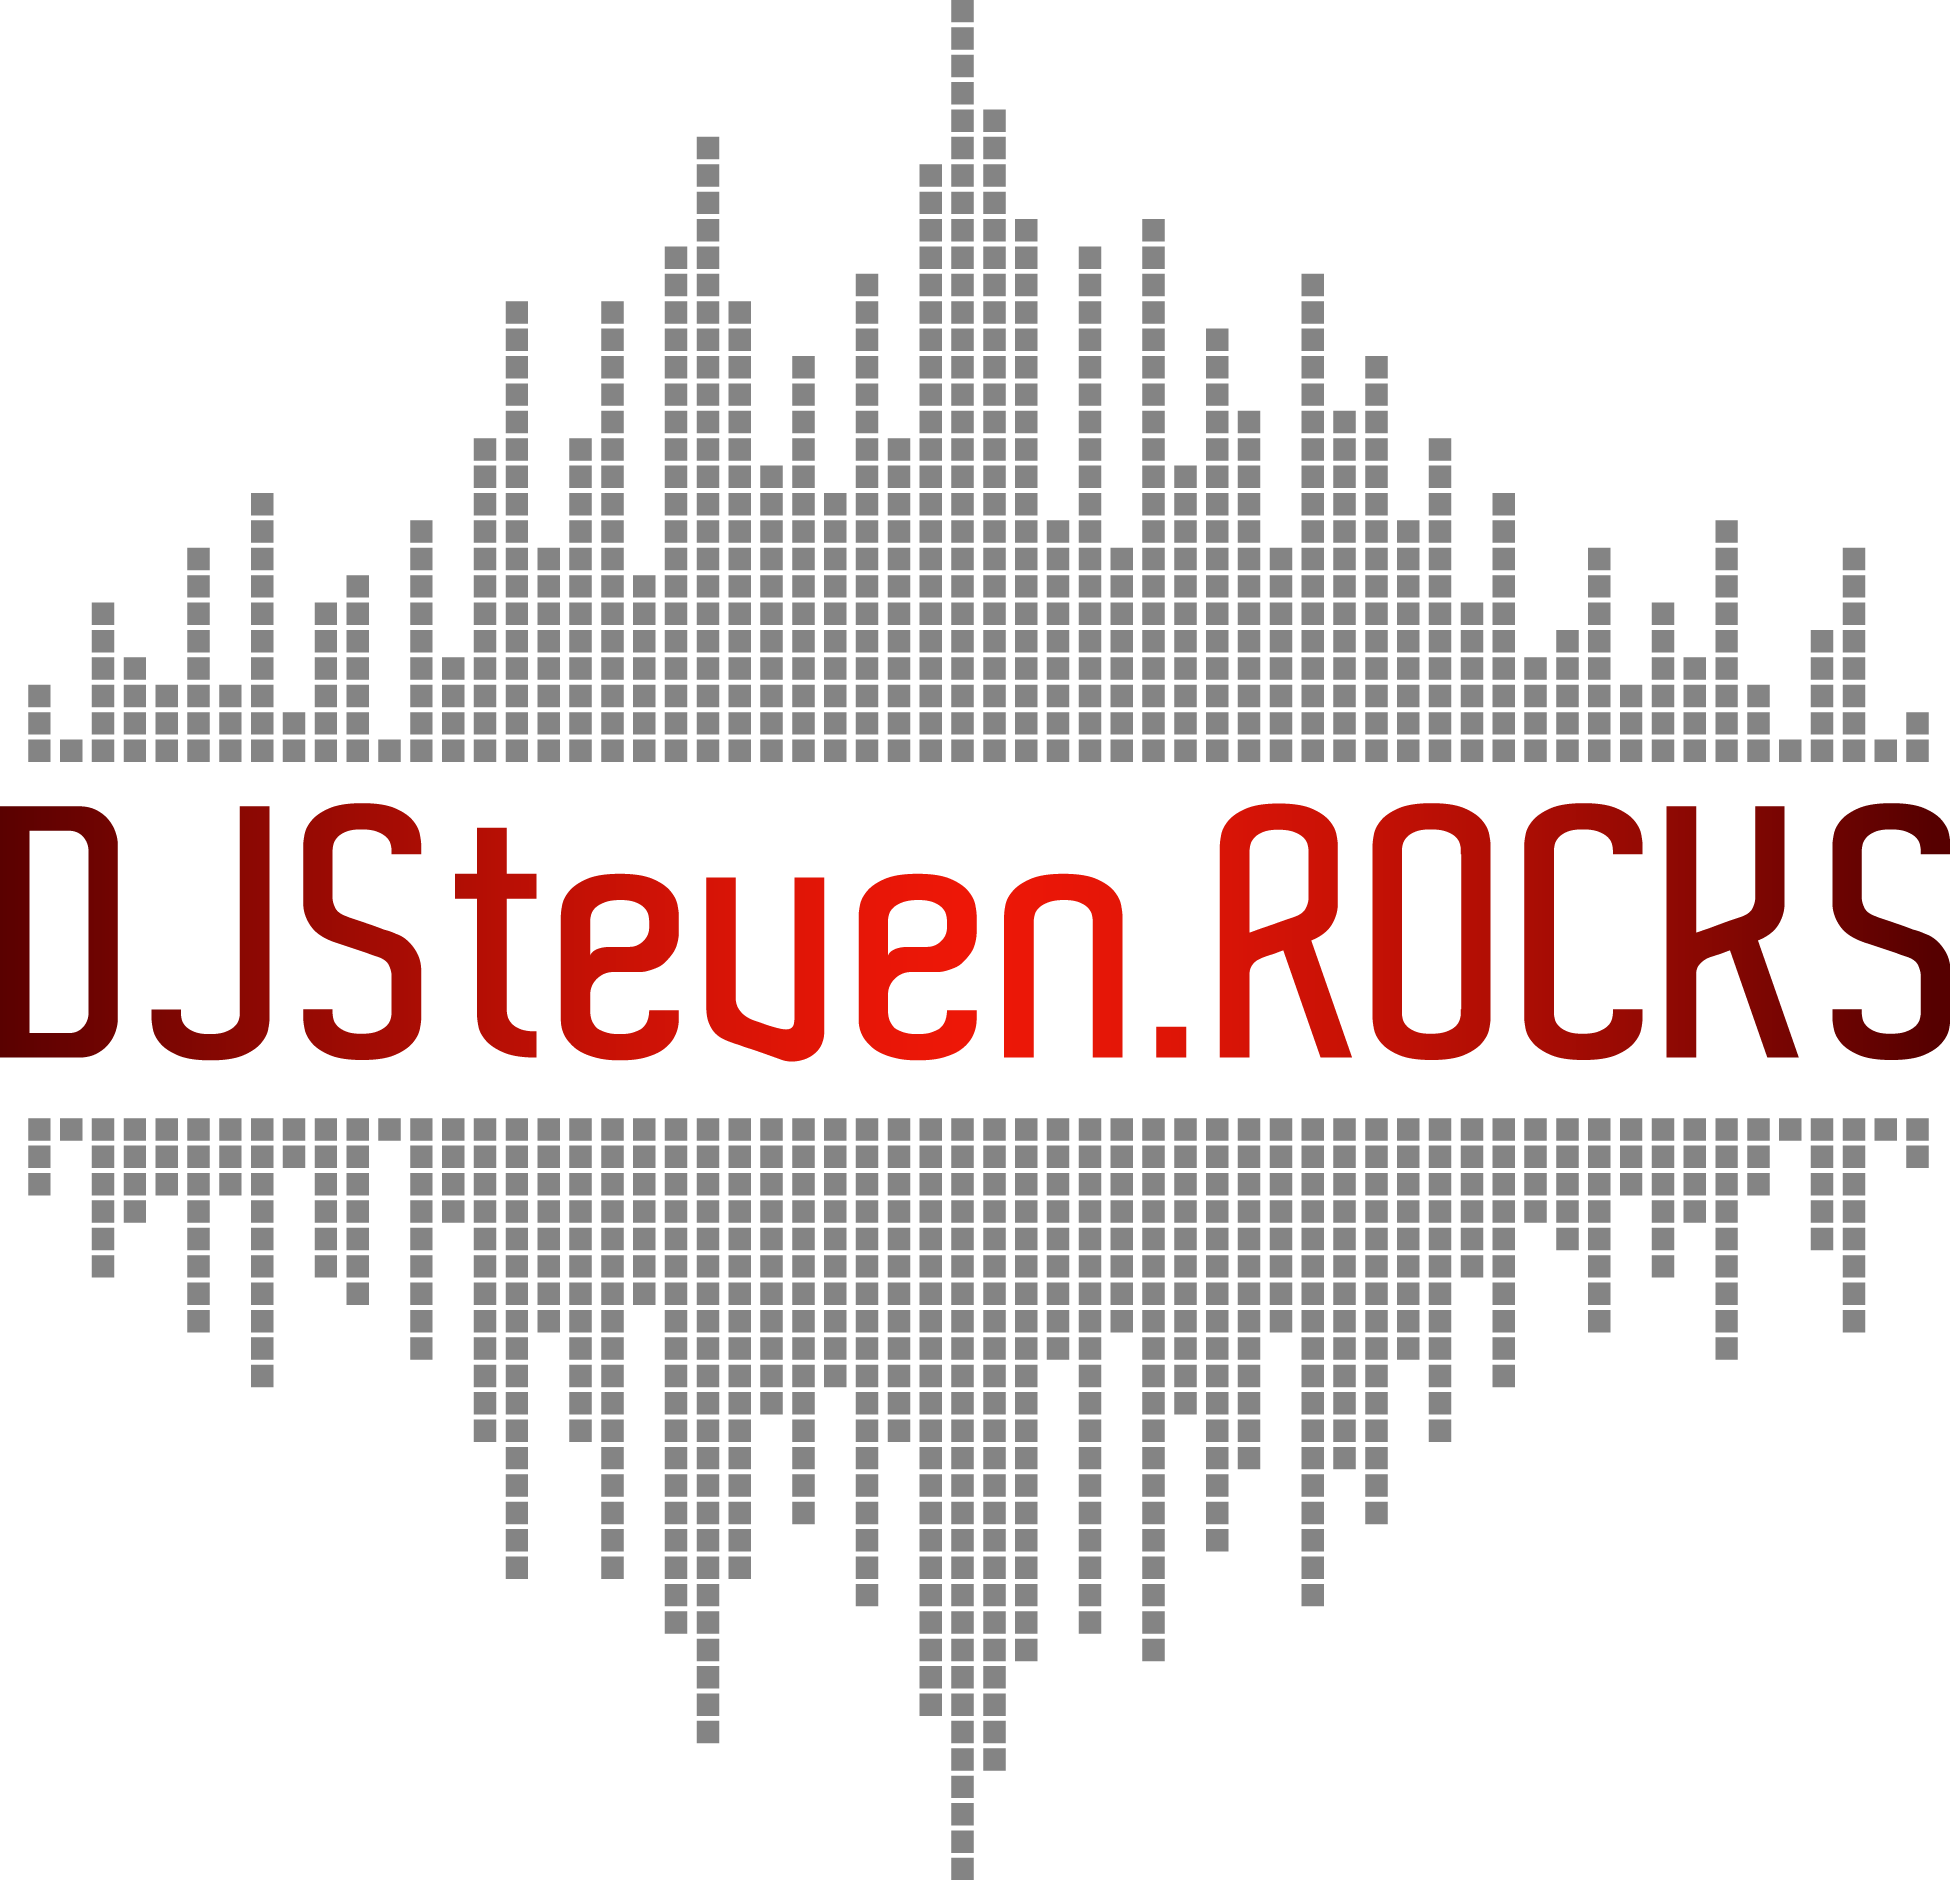 DJ Steven Rocks